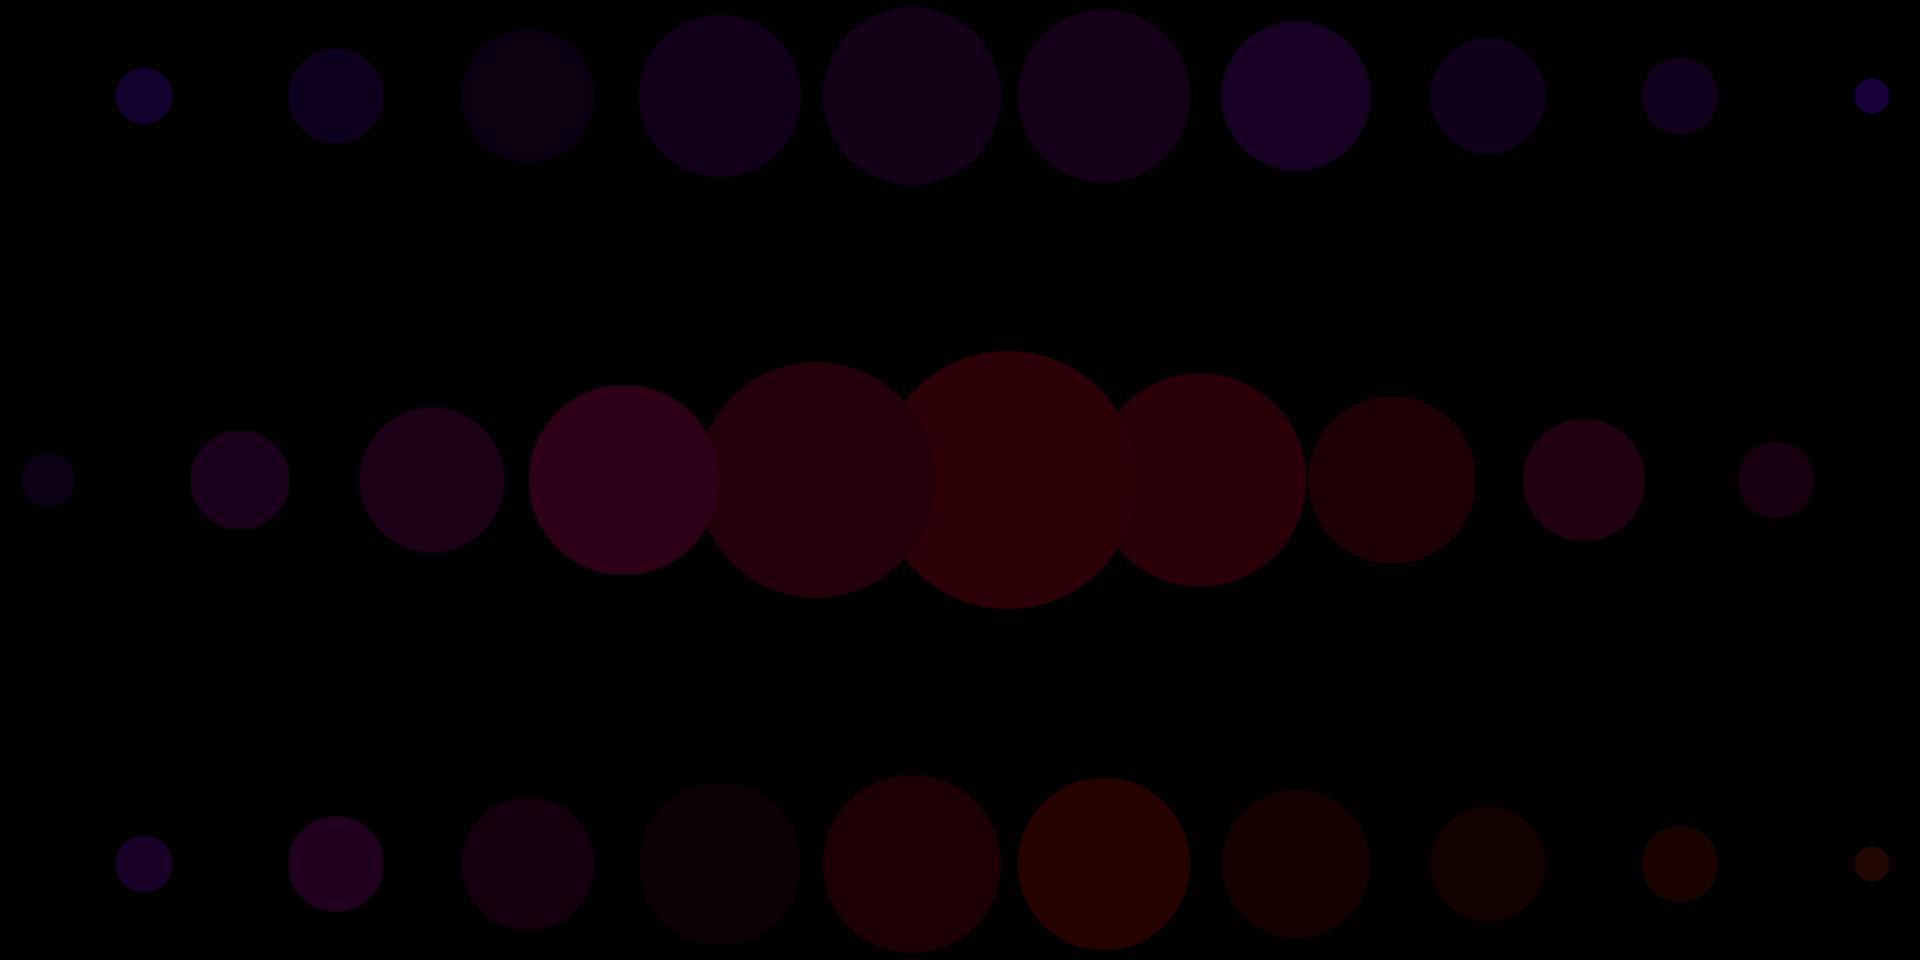 mörkgrön, röd vektorstruktur med cirklar. vektor